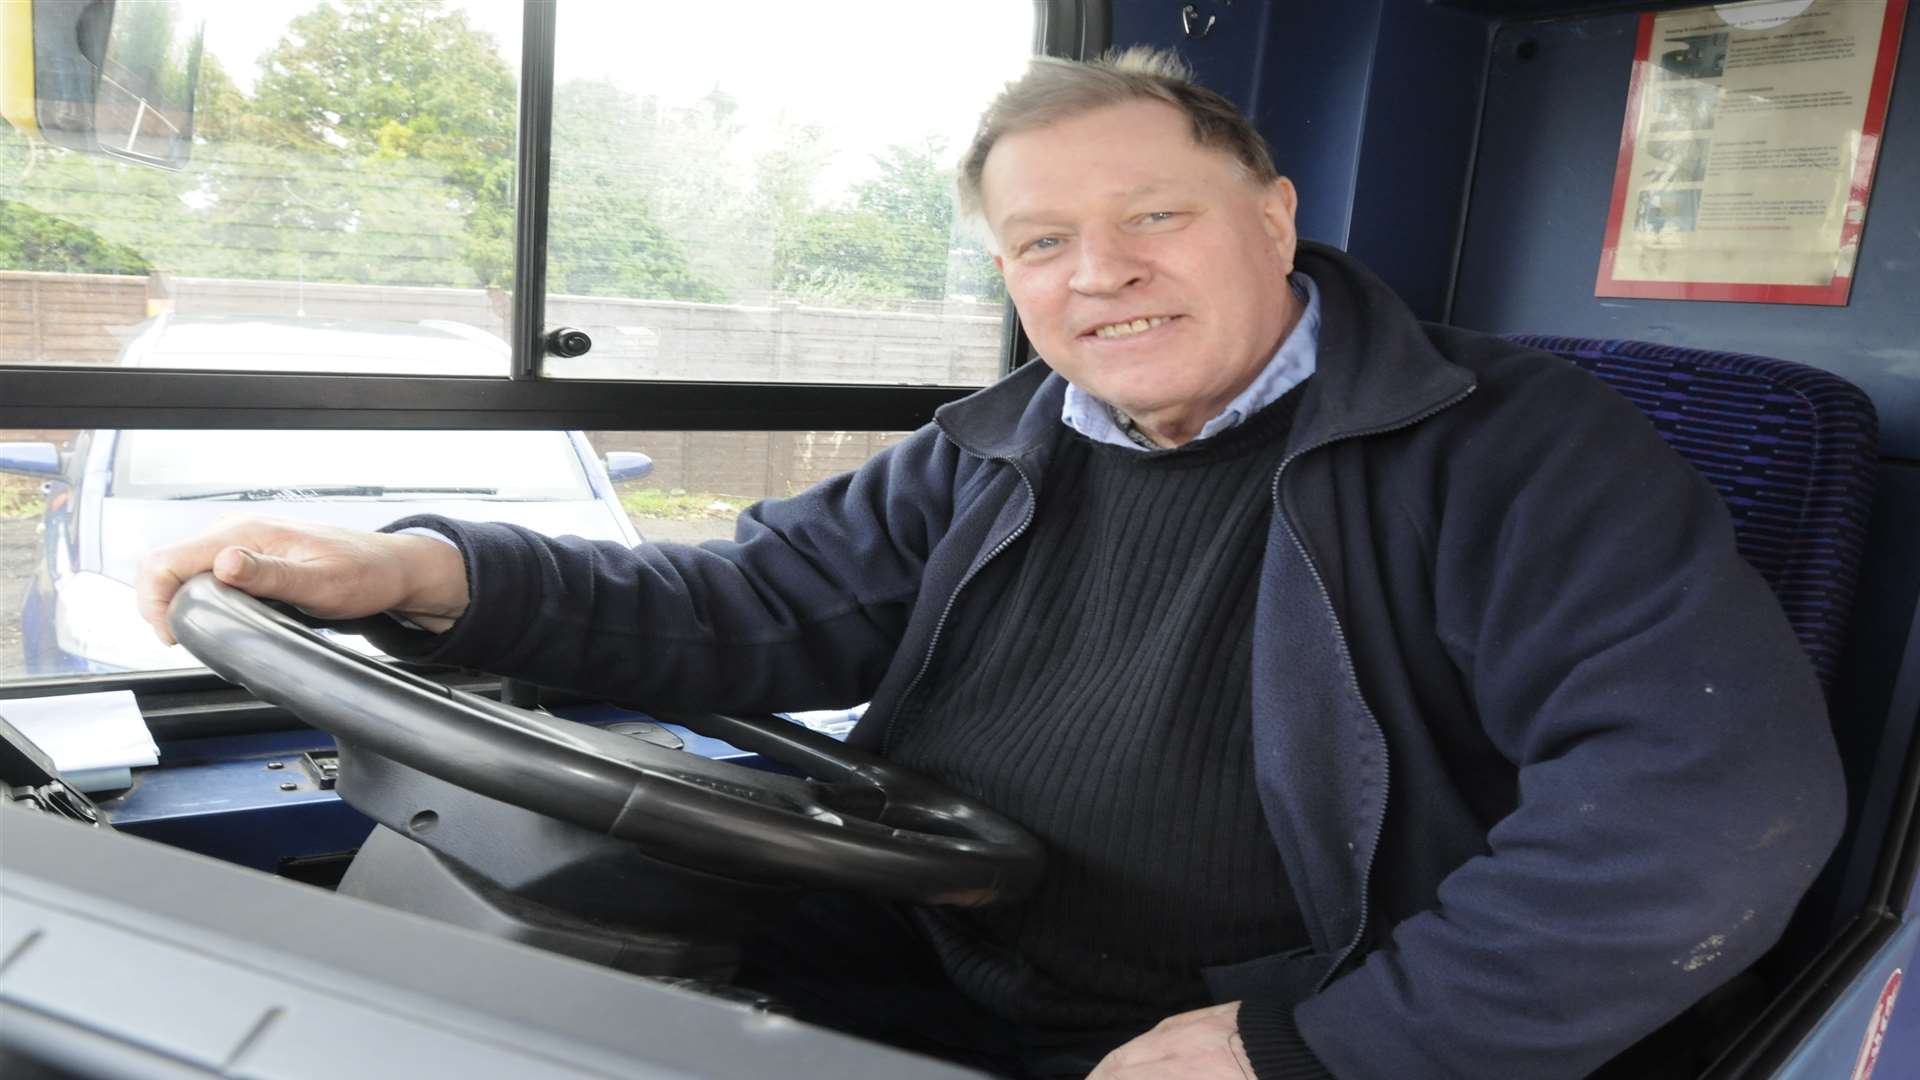 Bus driver Paul Taylor